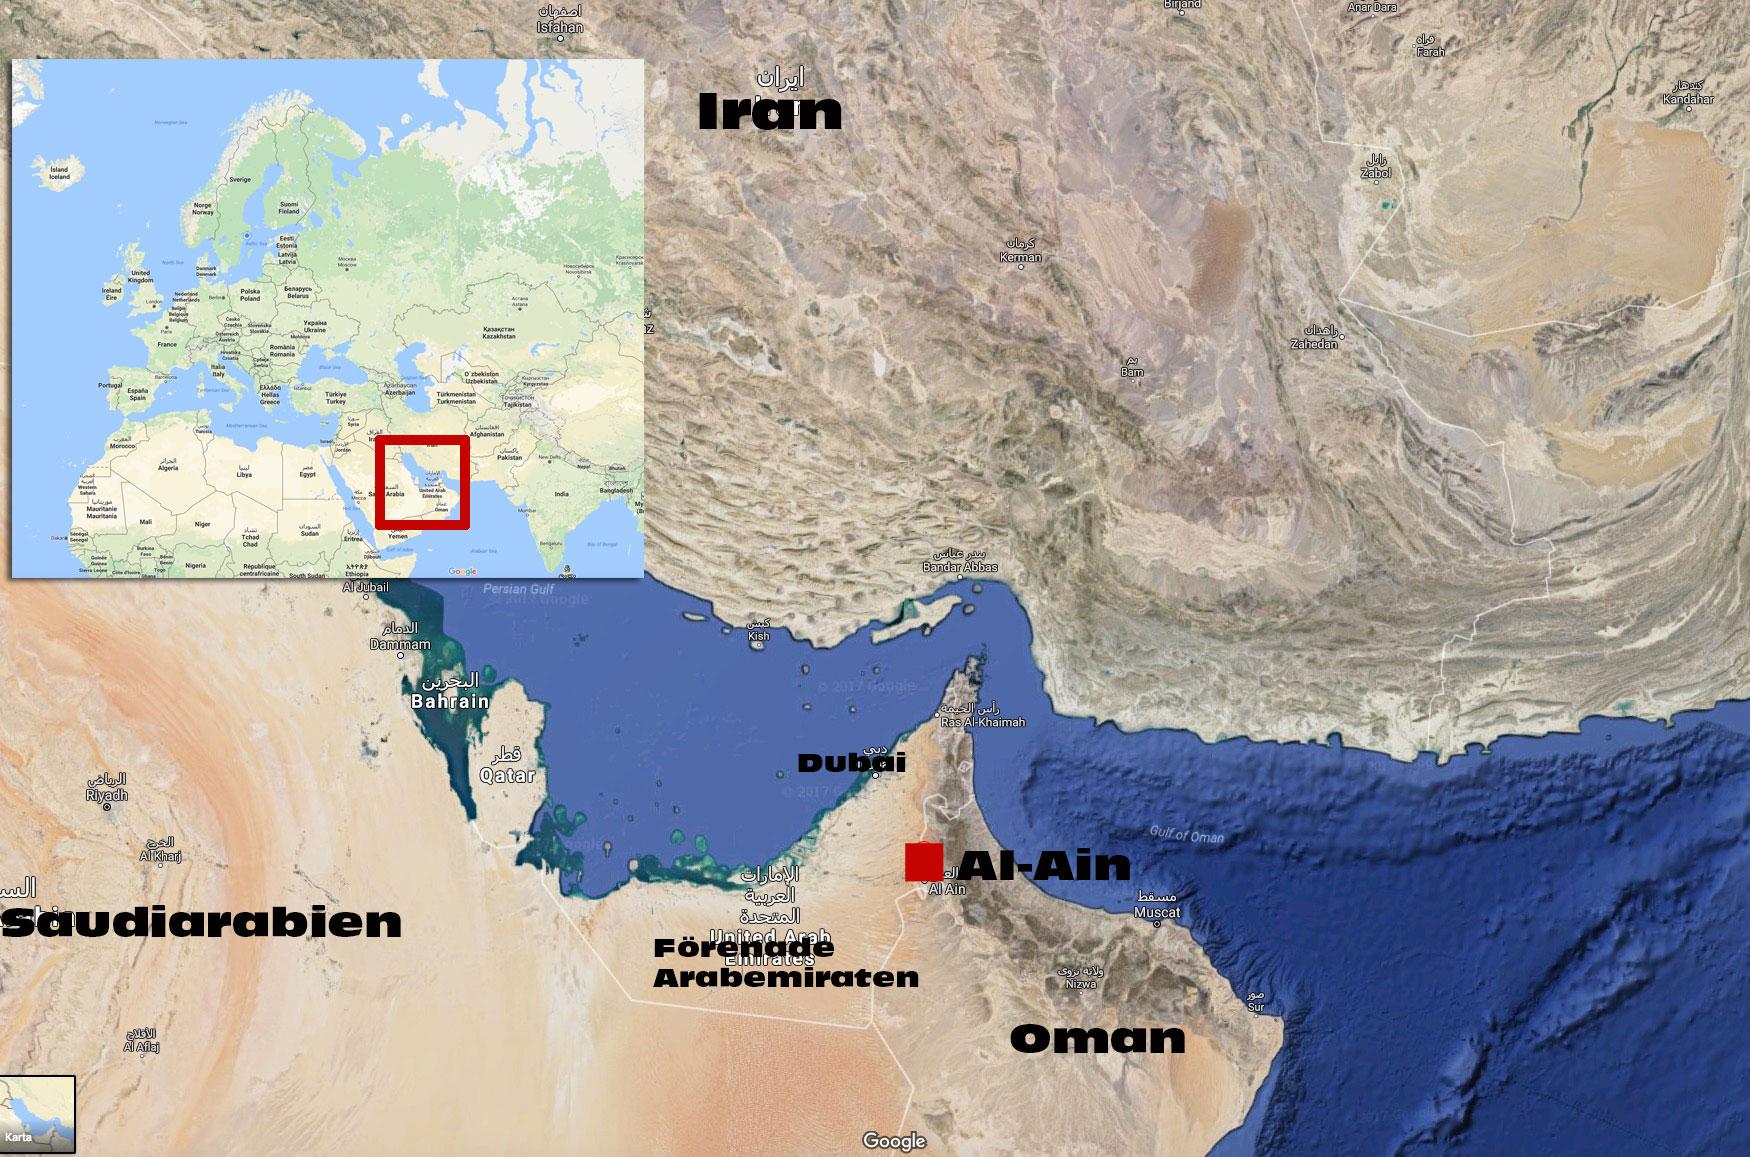 Al Ain med 600 000 invånare är den fjärde största staden i Förenade Arabemiraten och ligger vid gränsen mot Oman.